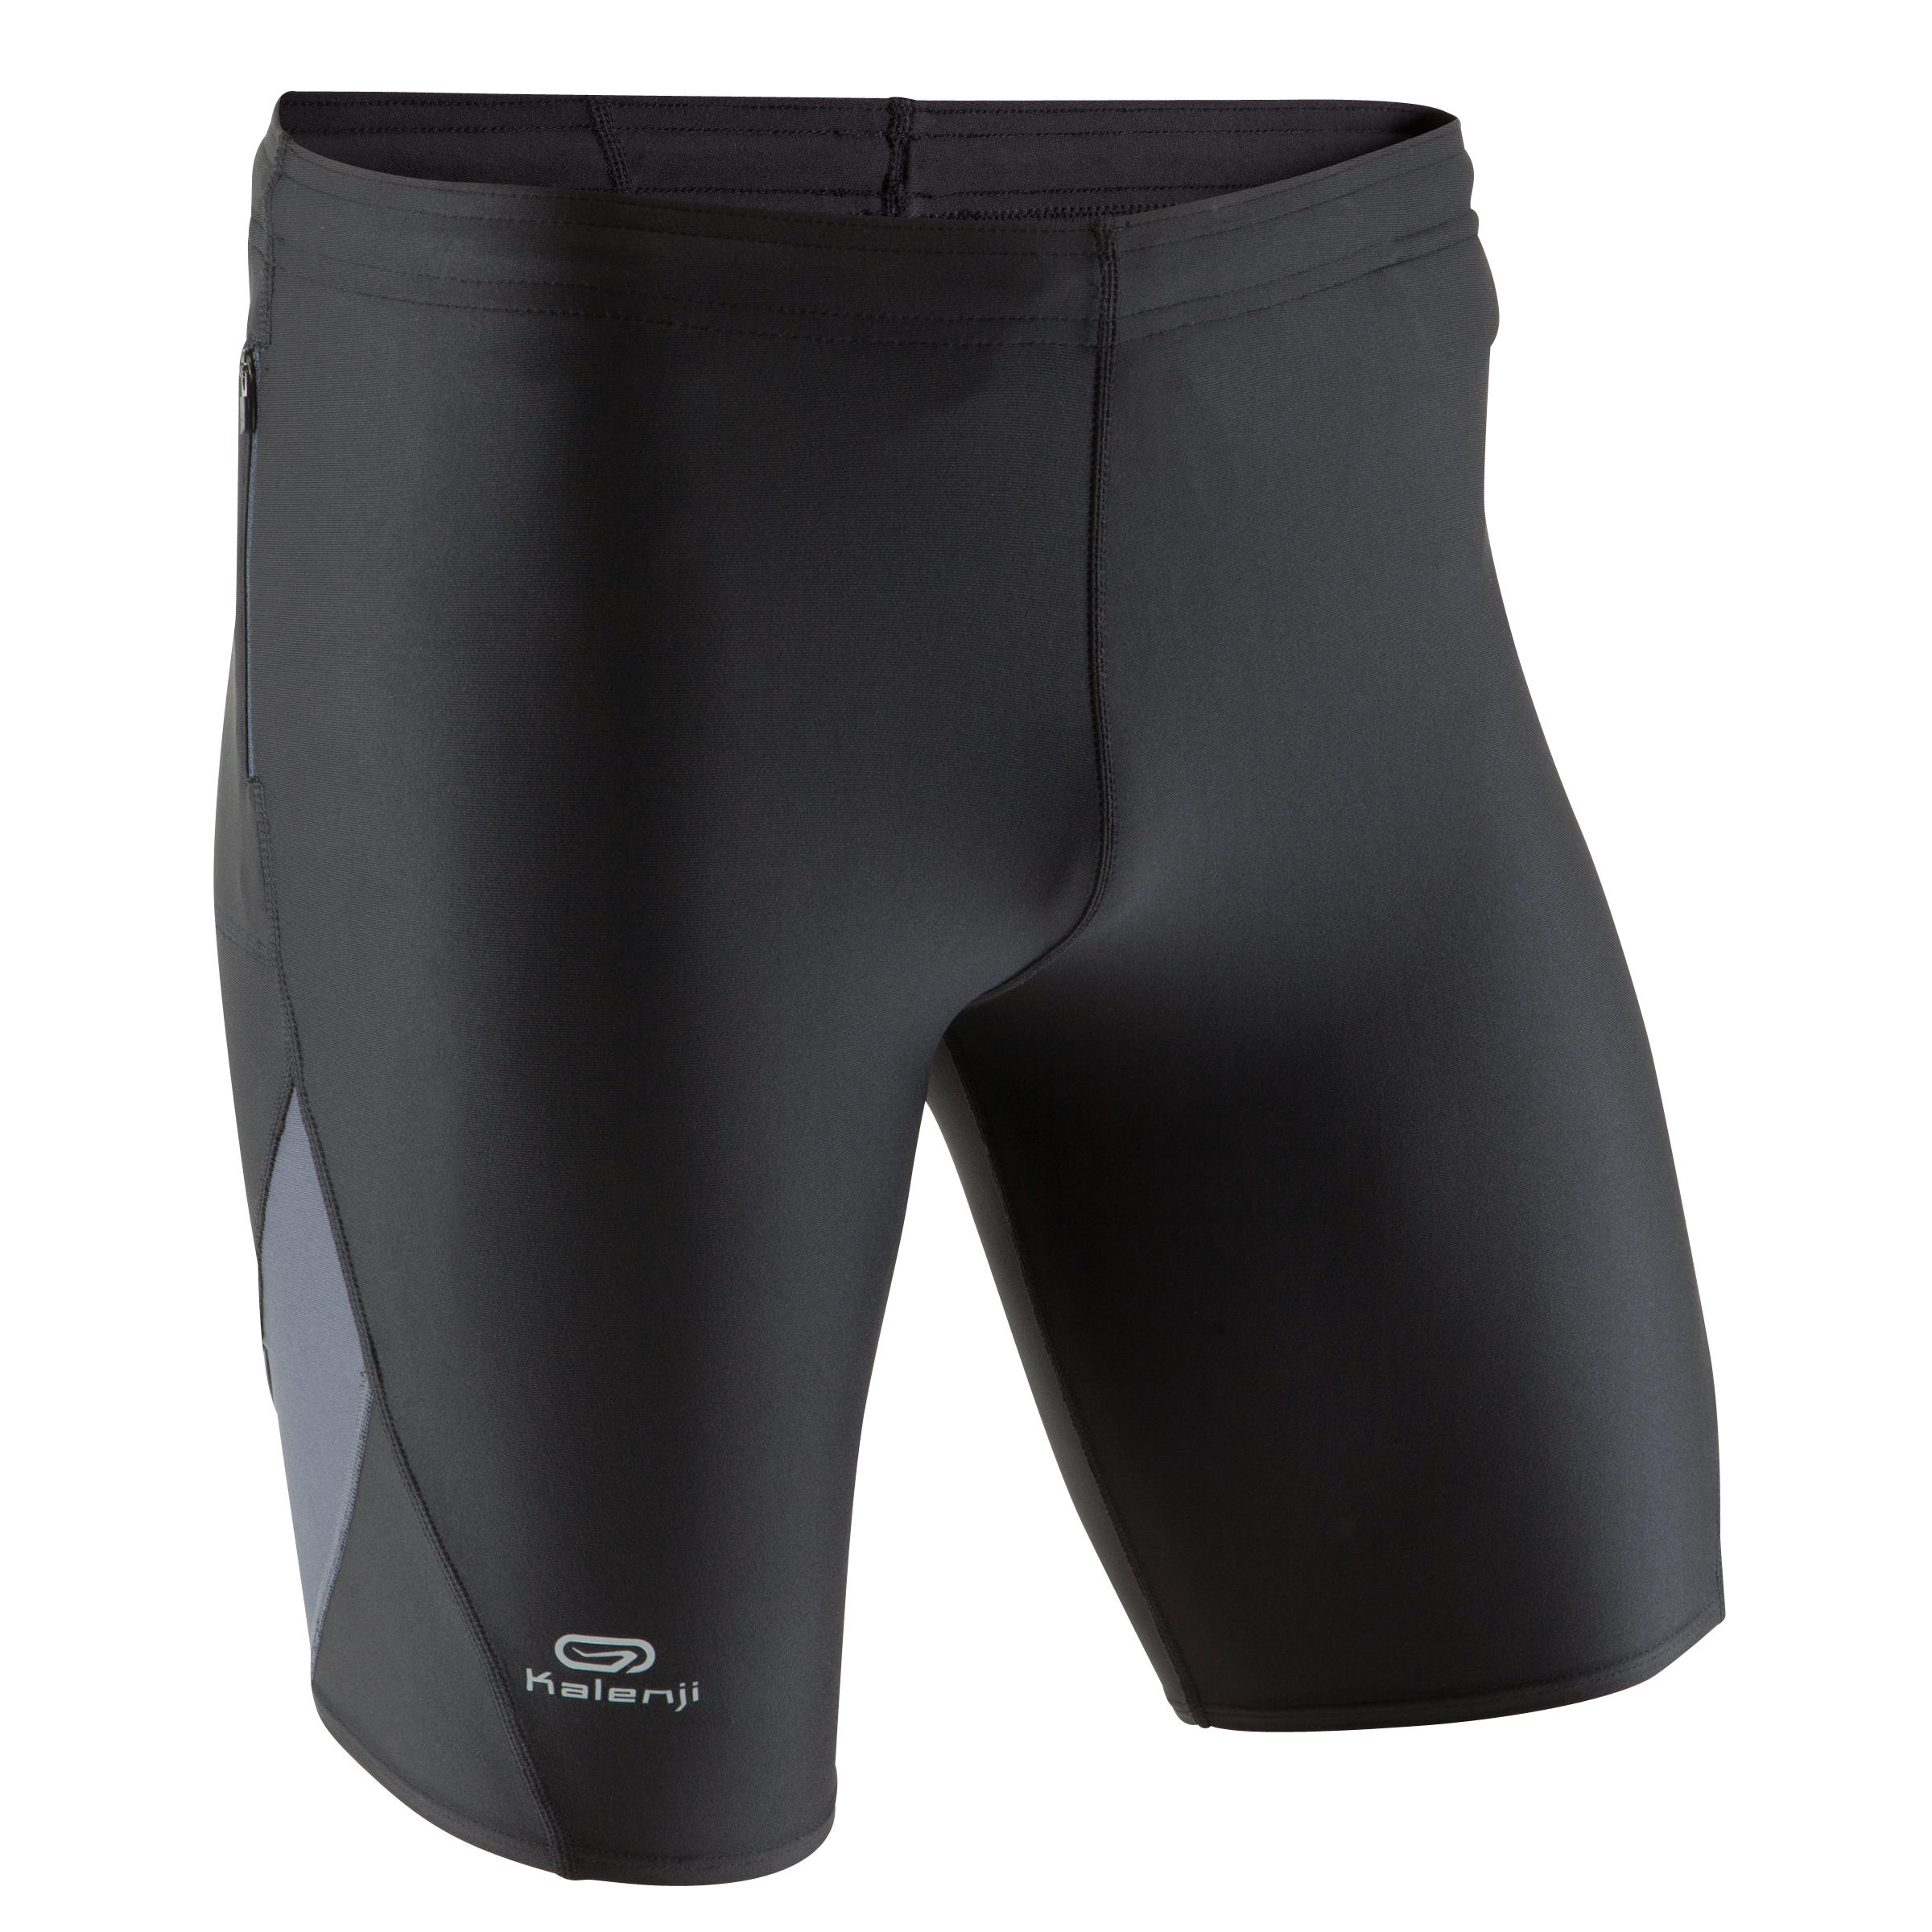 KALENJI Elio Men's Running Tight Shorts - Black/Grey